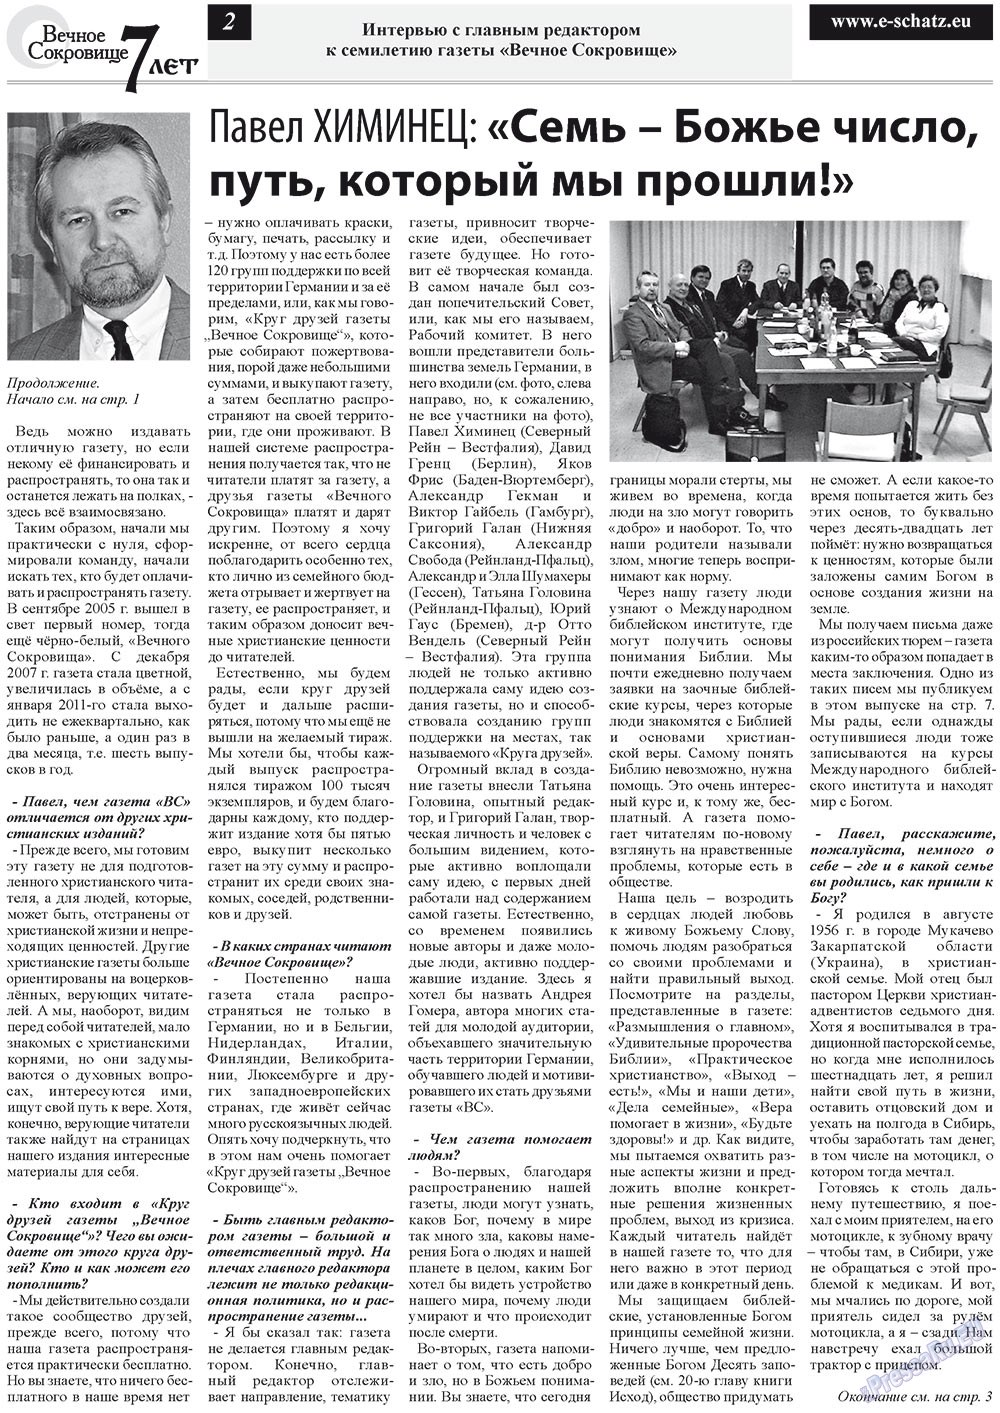 Вечное сокровище (газета). 2012 год, номер 5, стр. 2